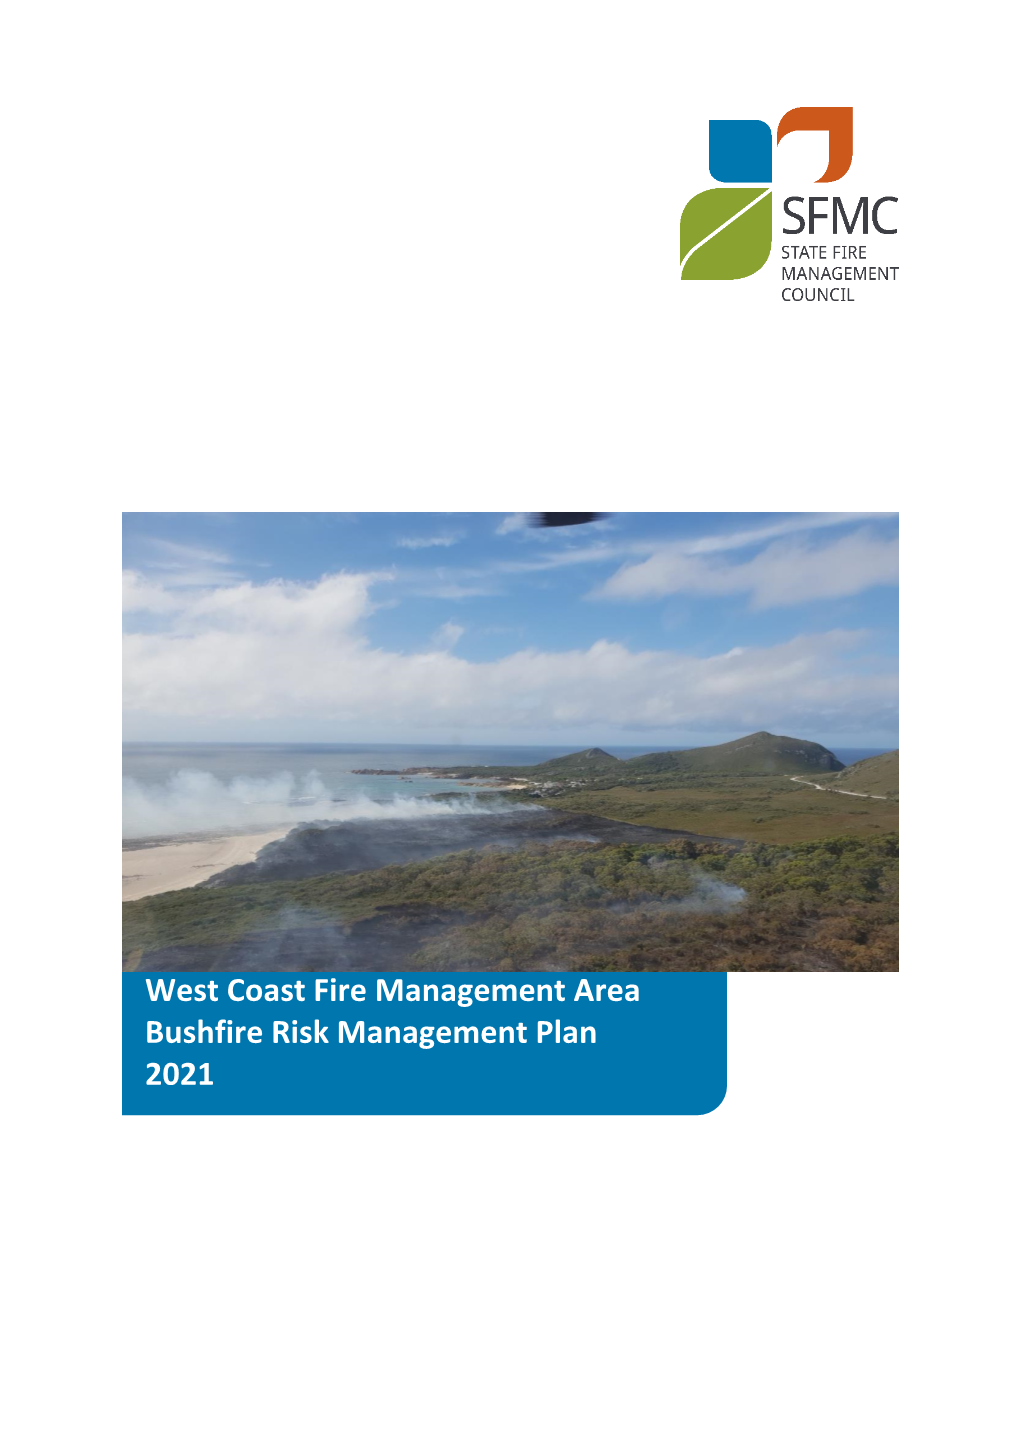 West Coast Fire Management Area Bushfire Risk Management Plan 2021